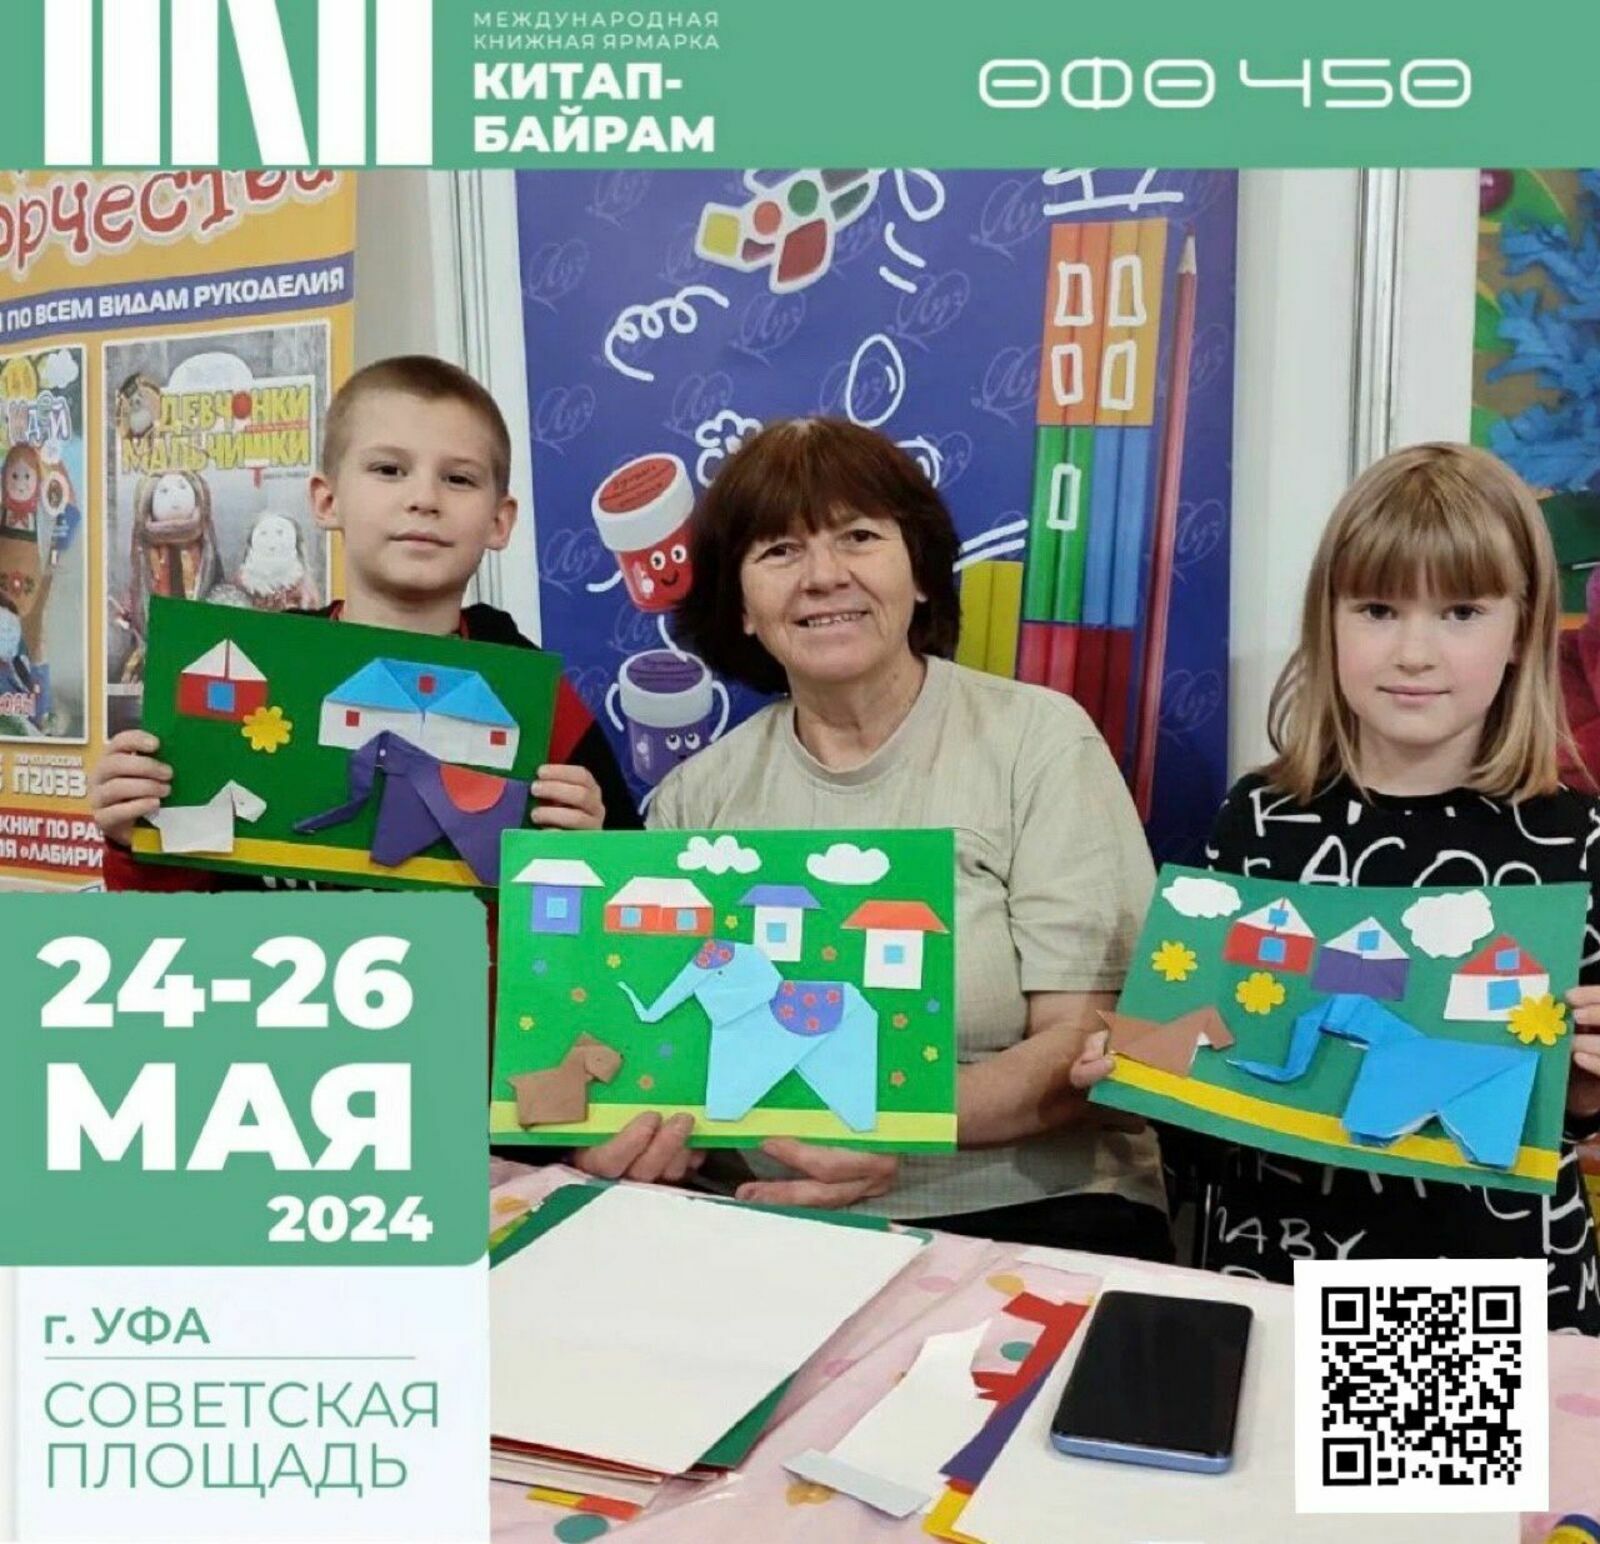 Детский литературный фестиваль пройдет в Уфе на книжной ярмарке «Китап-байрам»